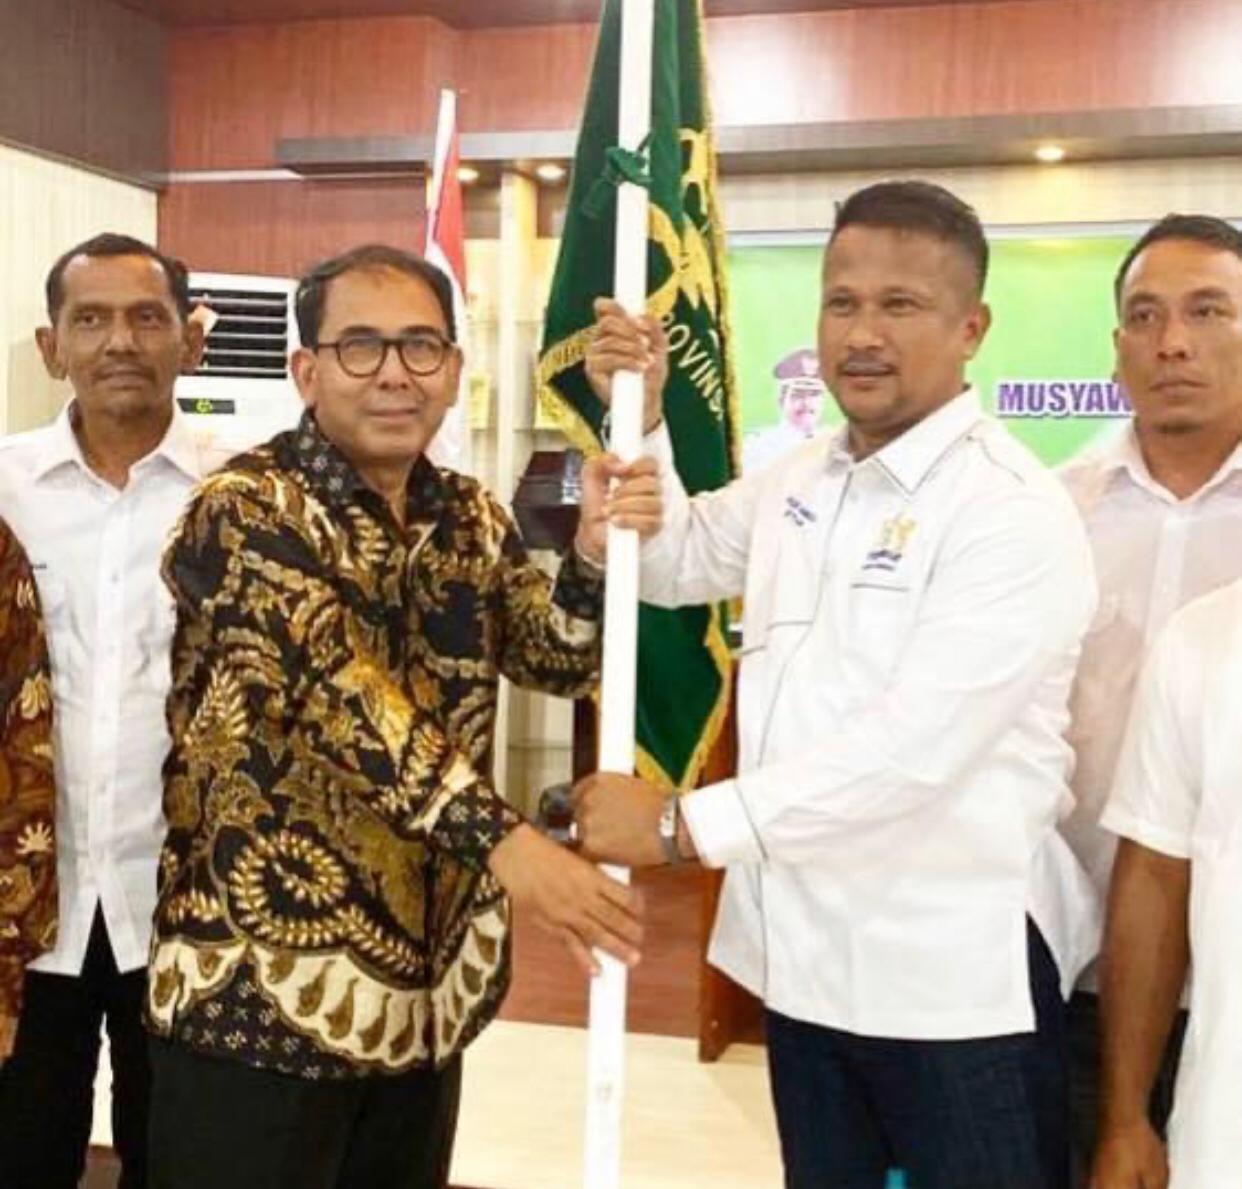 Makmur Budiman, Ketua Kadin Aceh Meninggal Dunia